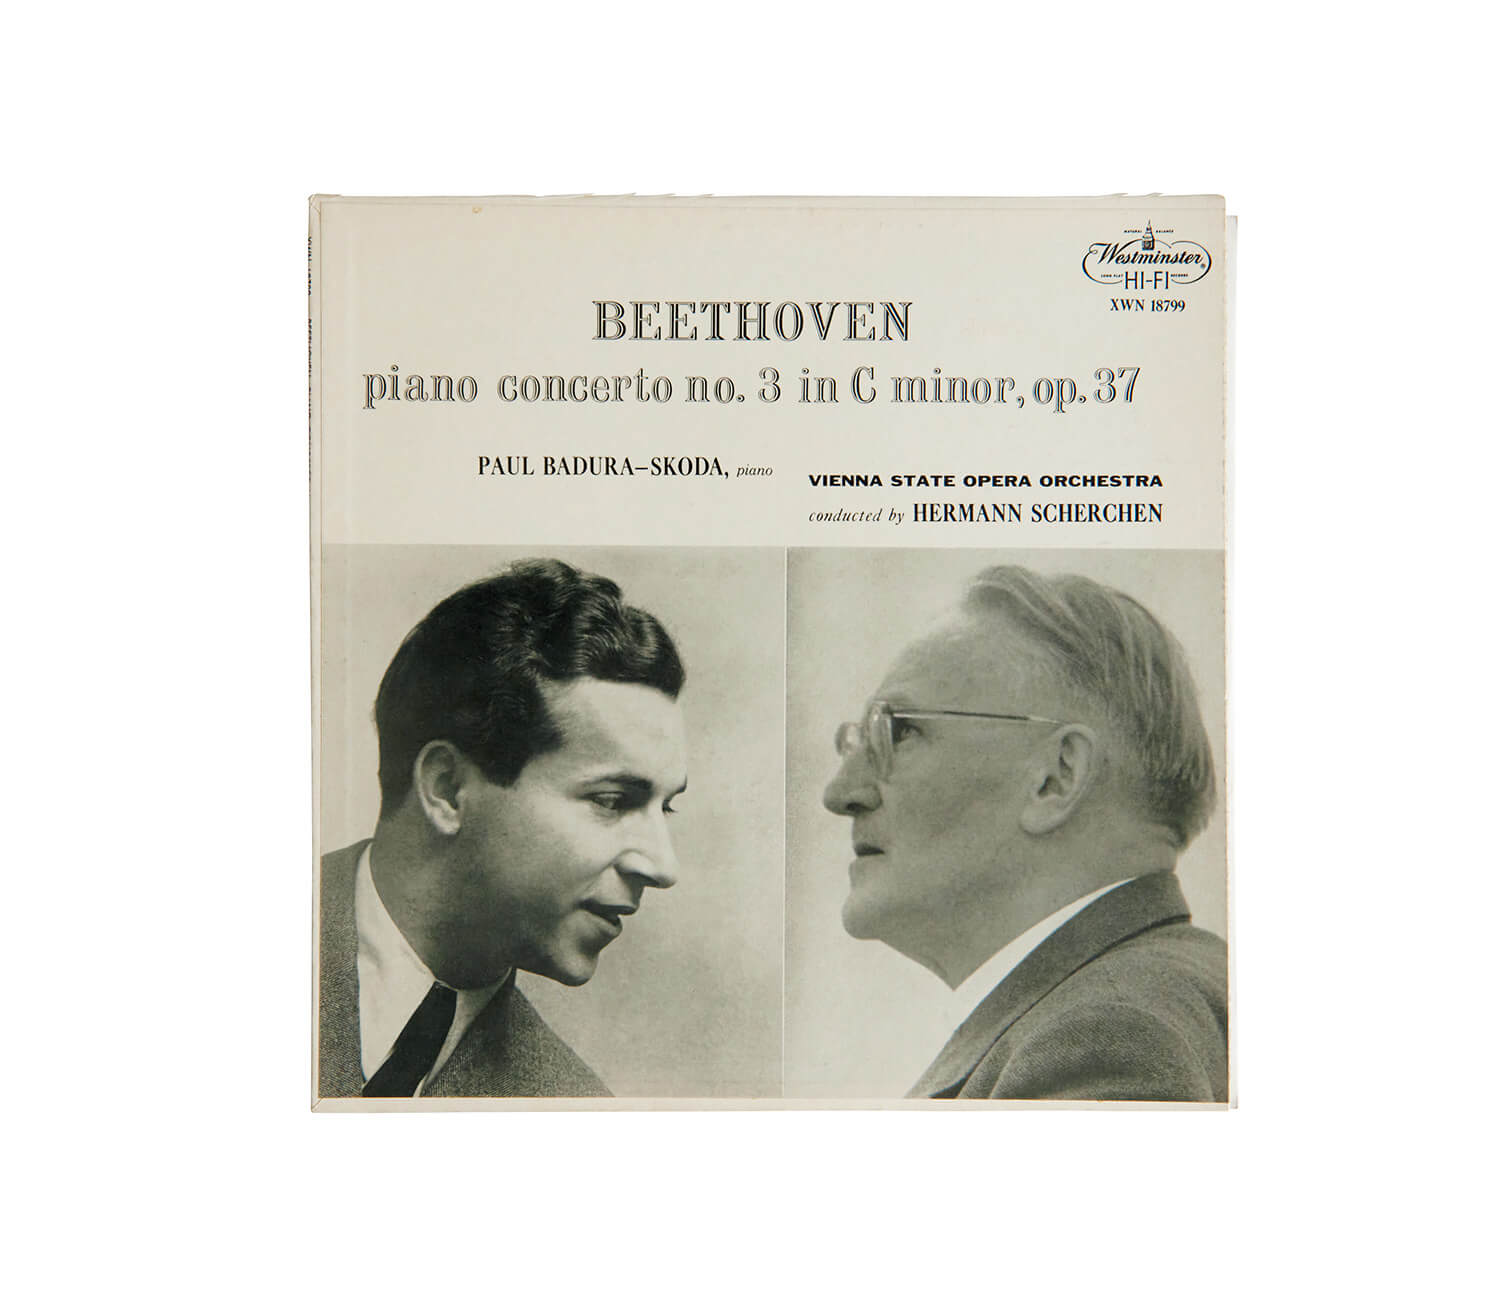 パウル・バドゥラ= スコダが演奏した、ベートーヴェン「ピアノ協奏曲第3番 ハ短調」レコードジャケット